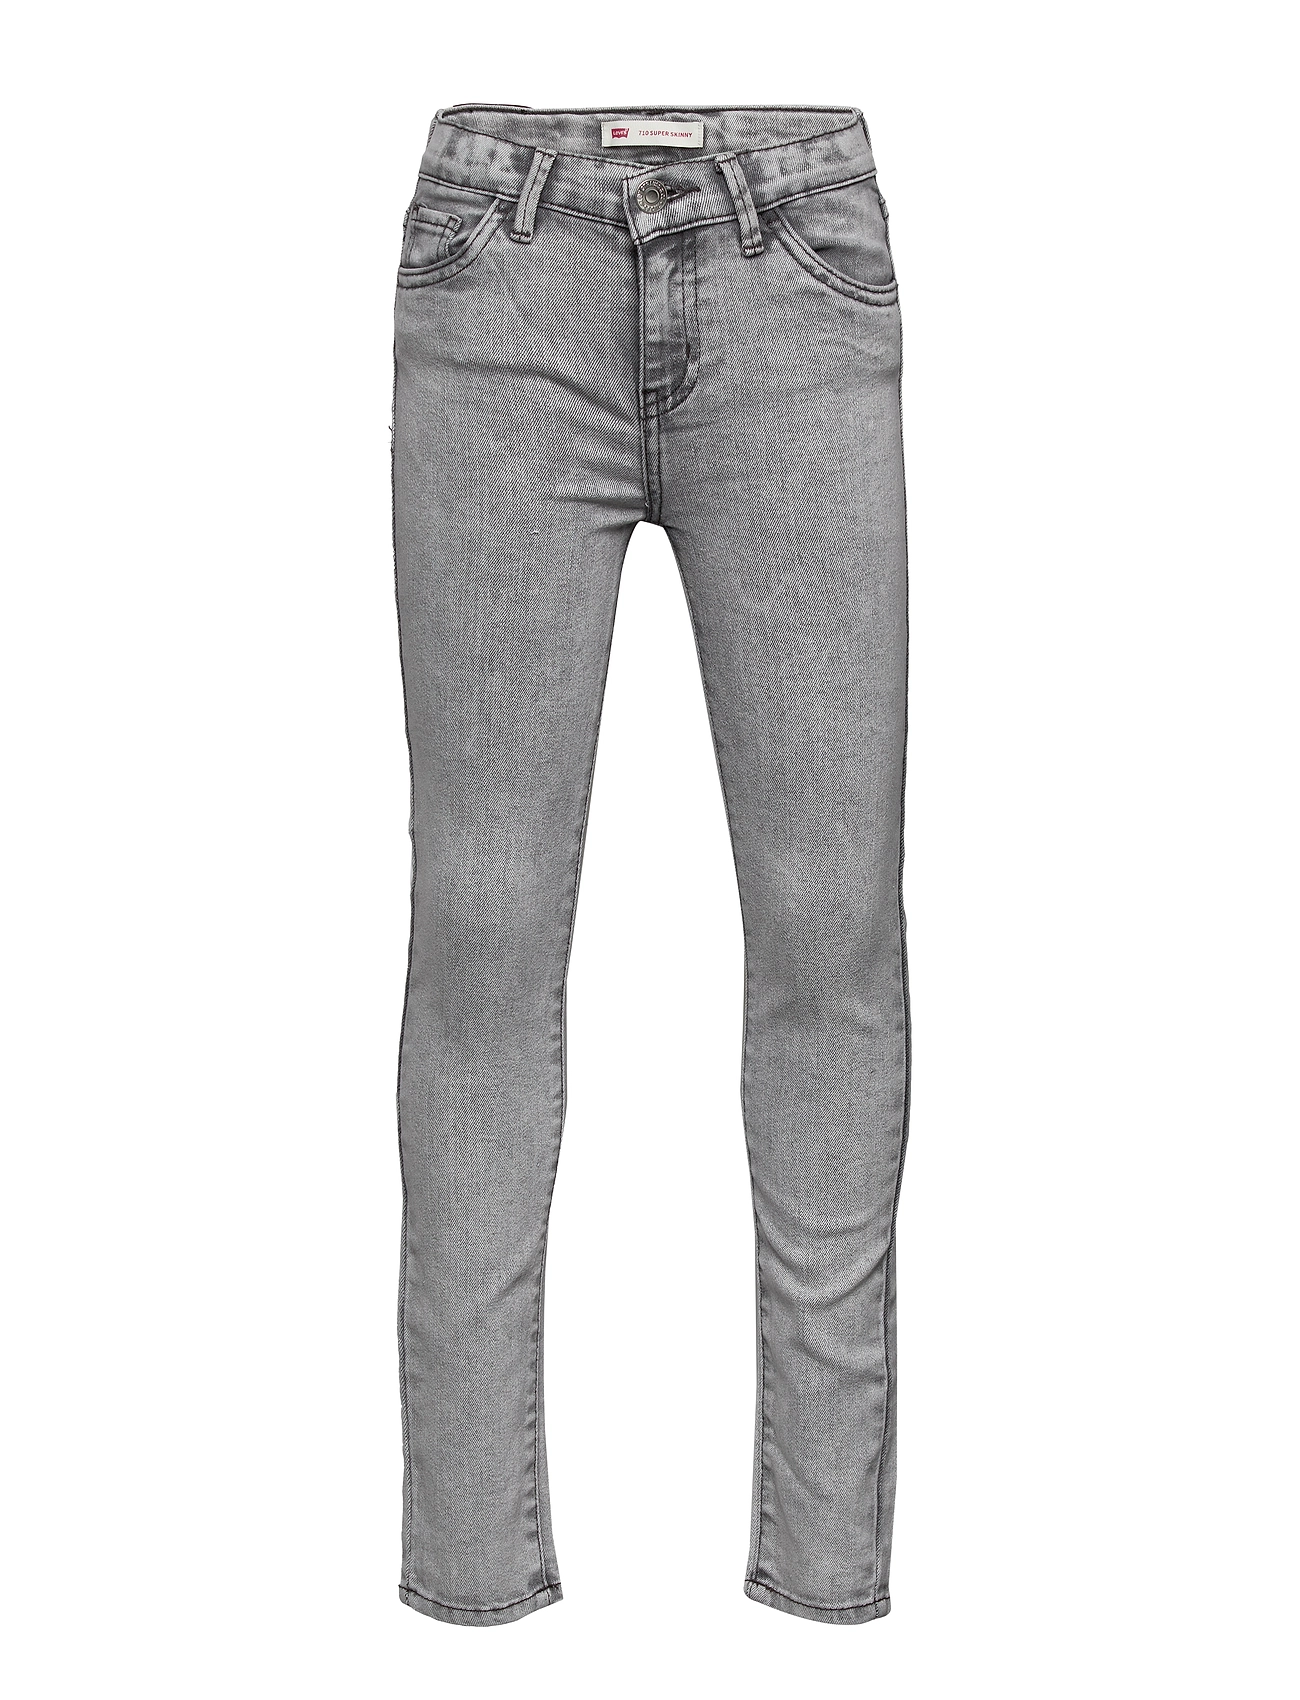 levis 710 jeans